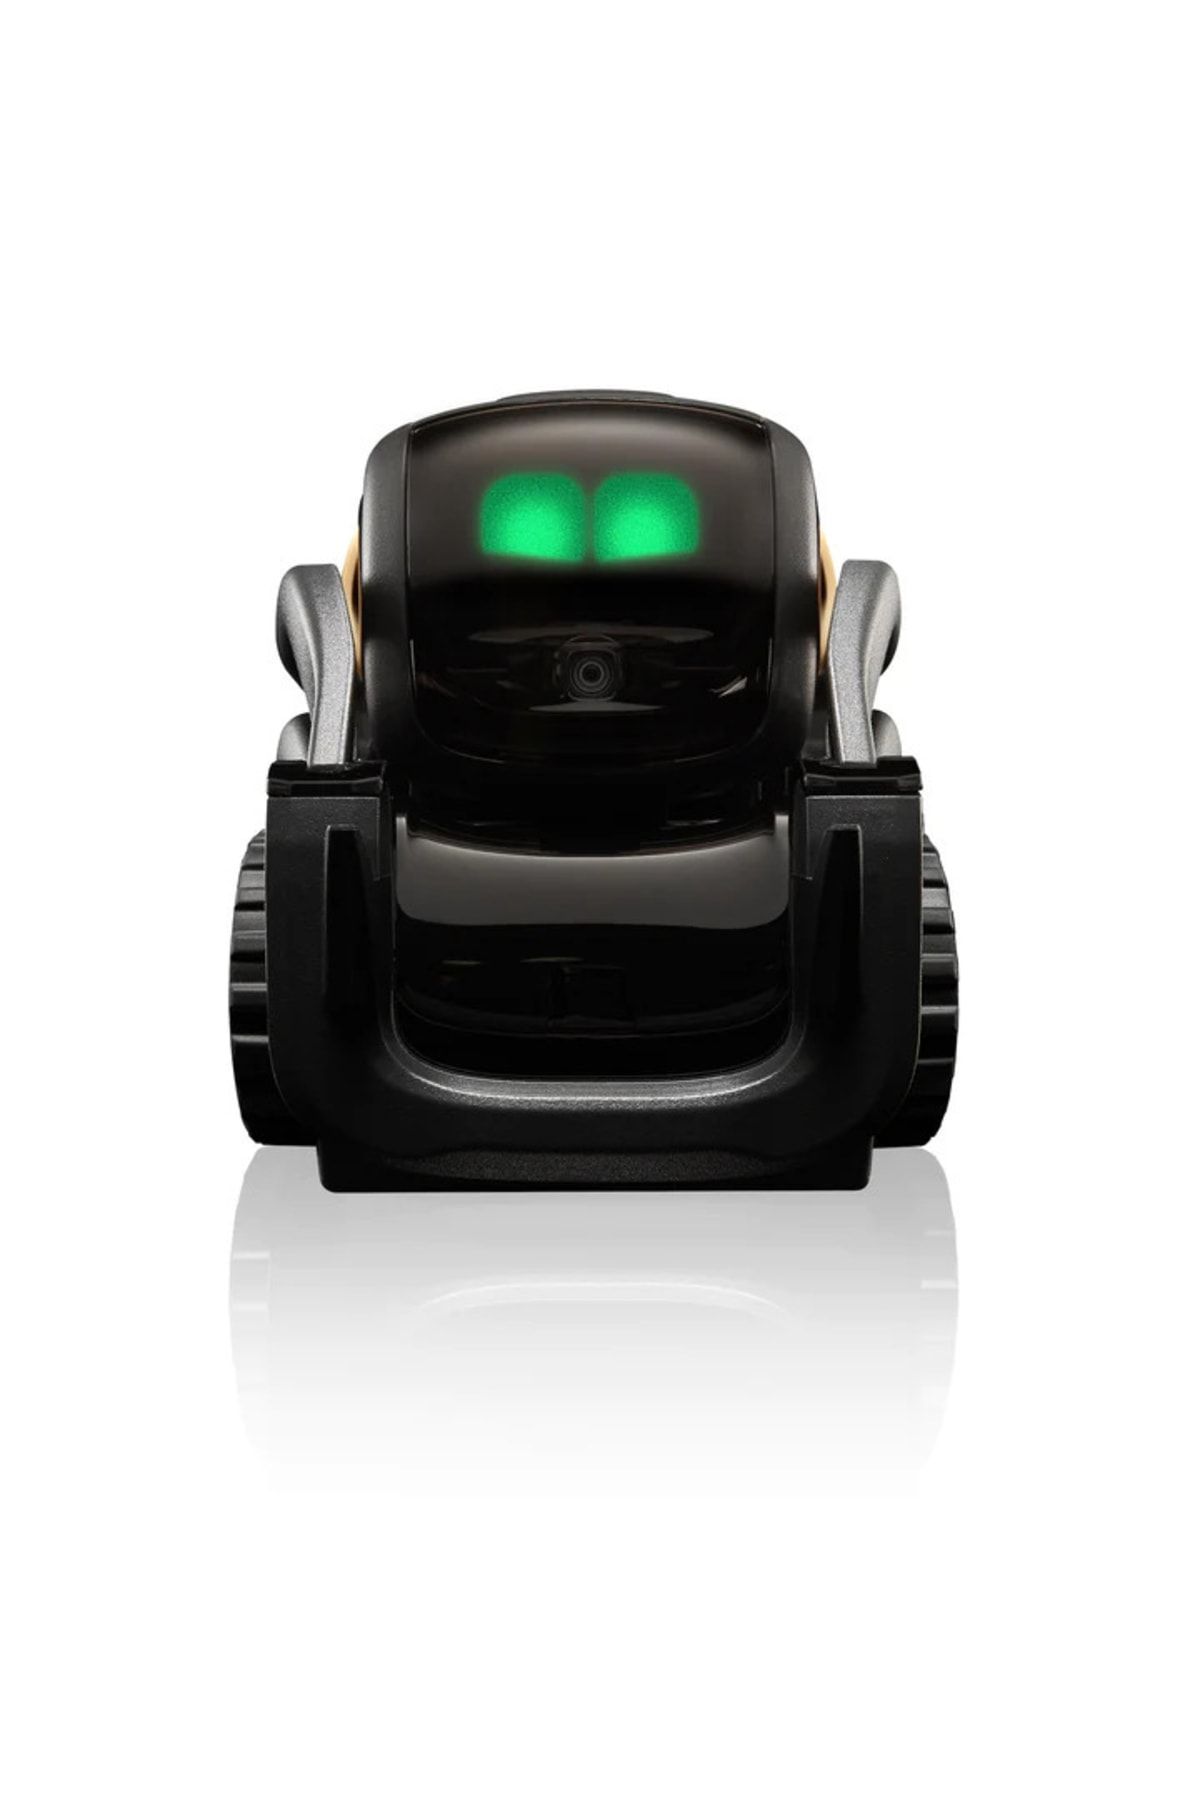 Vector 2.0 Aı Robot Yardımcısı Fiyatı, Yorumları - Trendyol